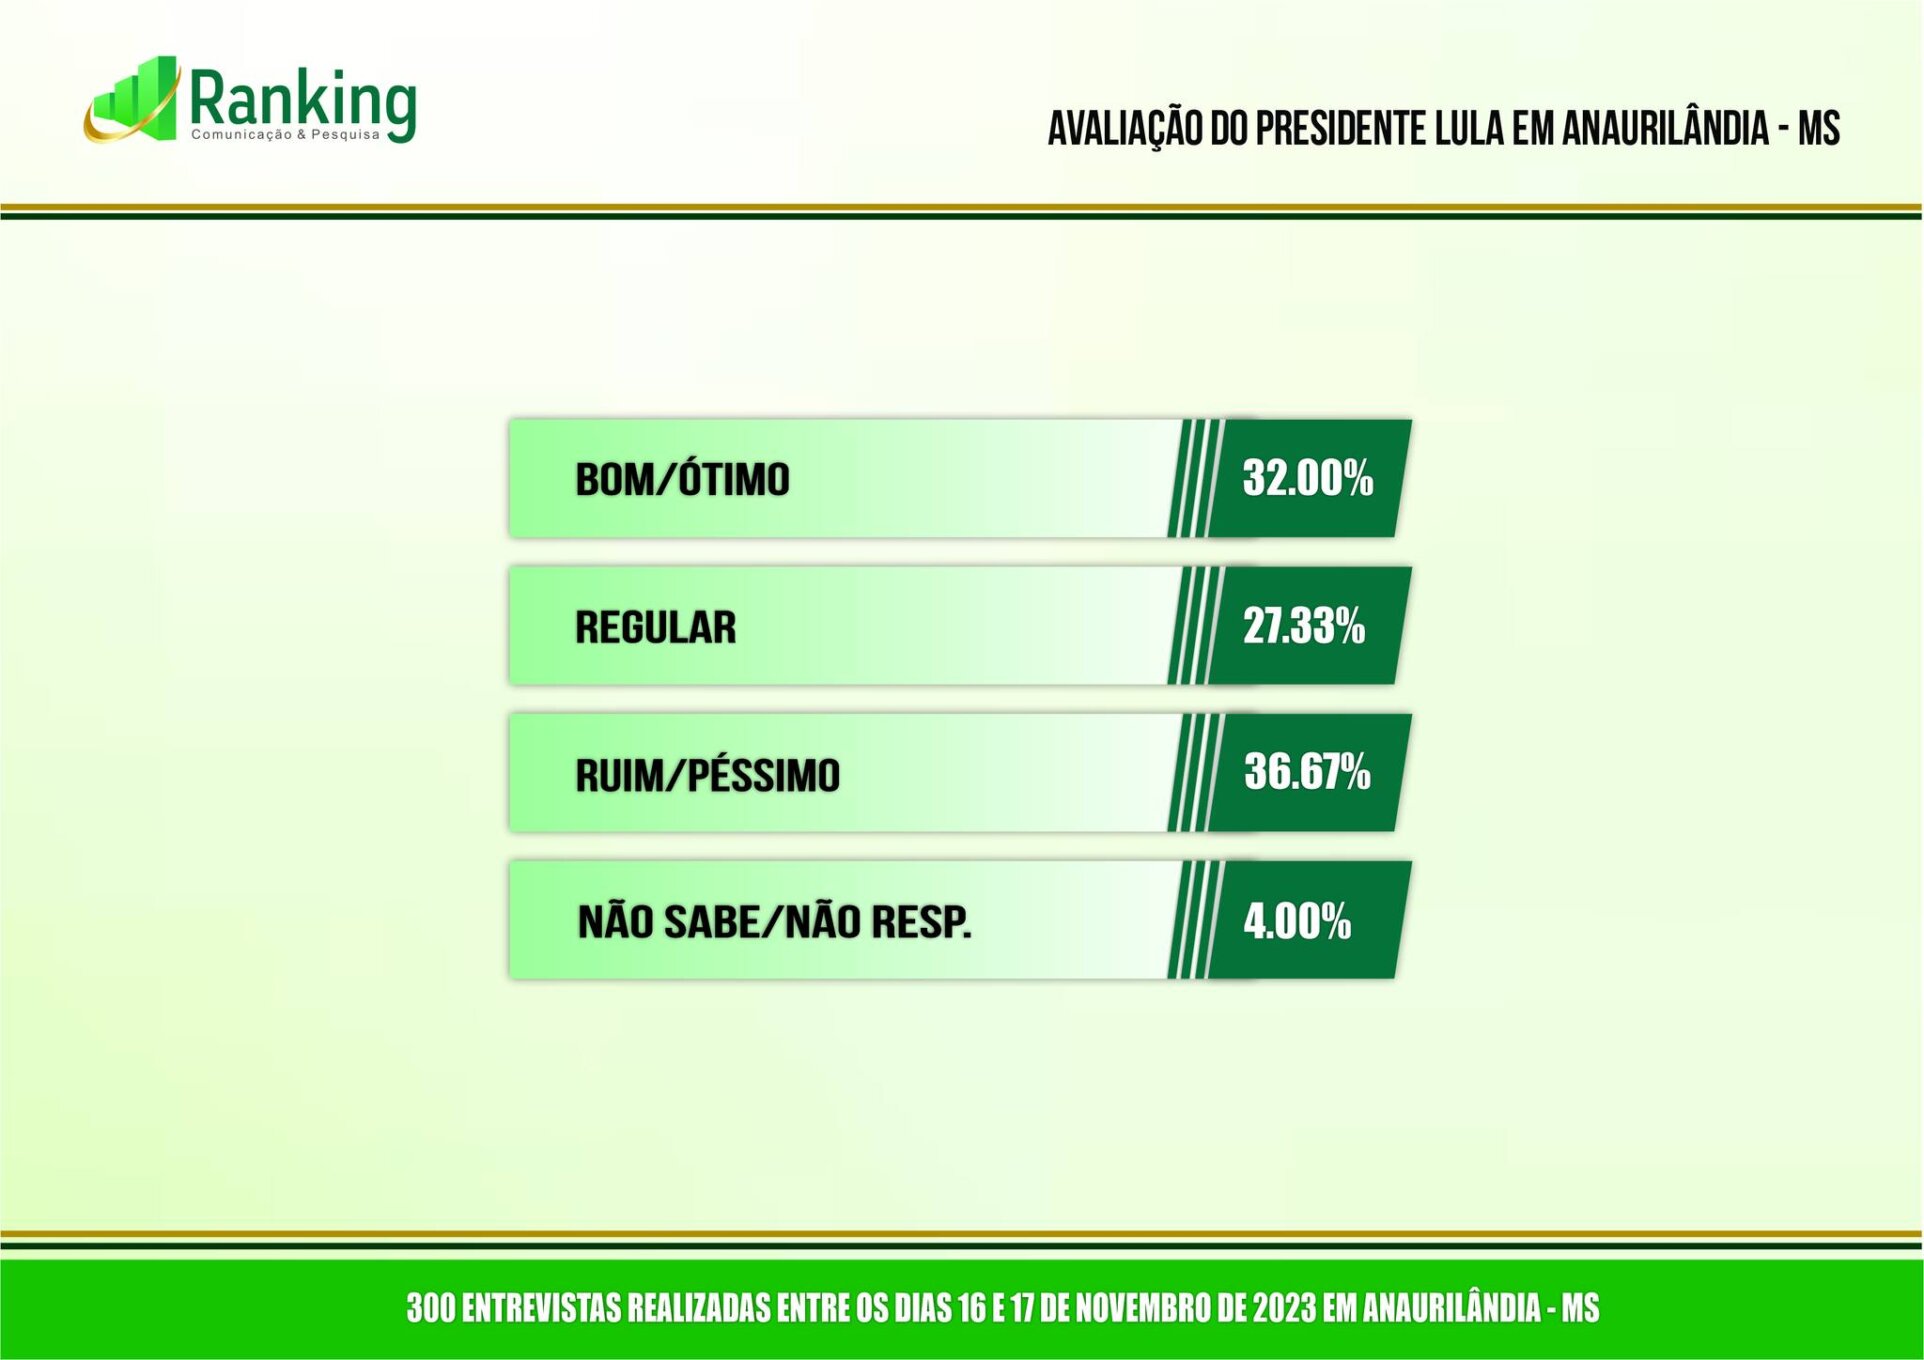 Gestão do prefeito de Anaurilândia é aprovada por 73% da população, revela pesquisa Ranking